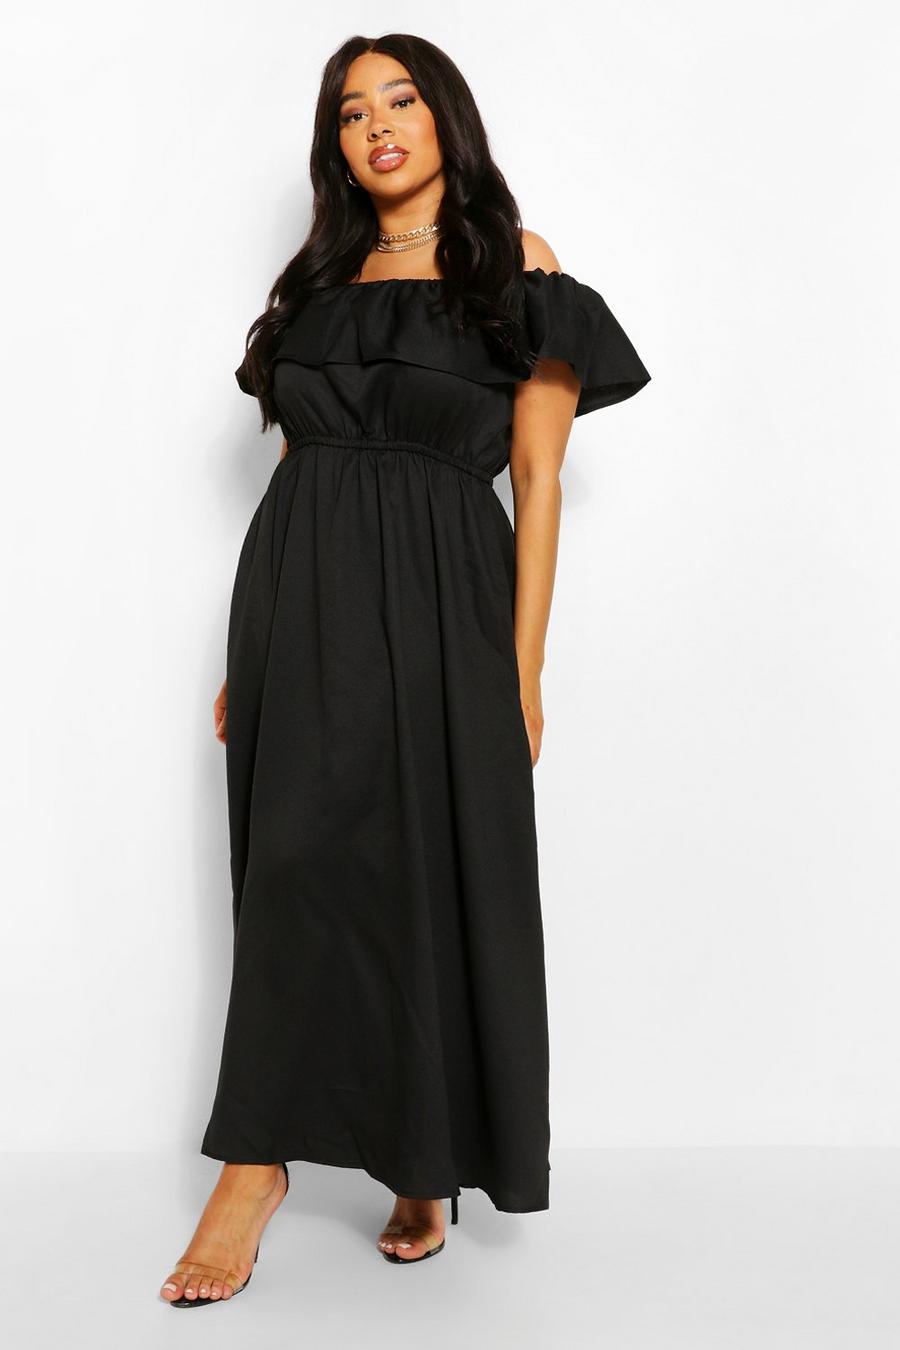 שחור שמלת מקסי חשופת כתפיים עם מלמלה, מידות גדולות